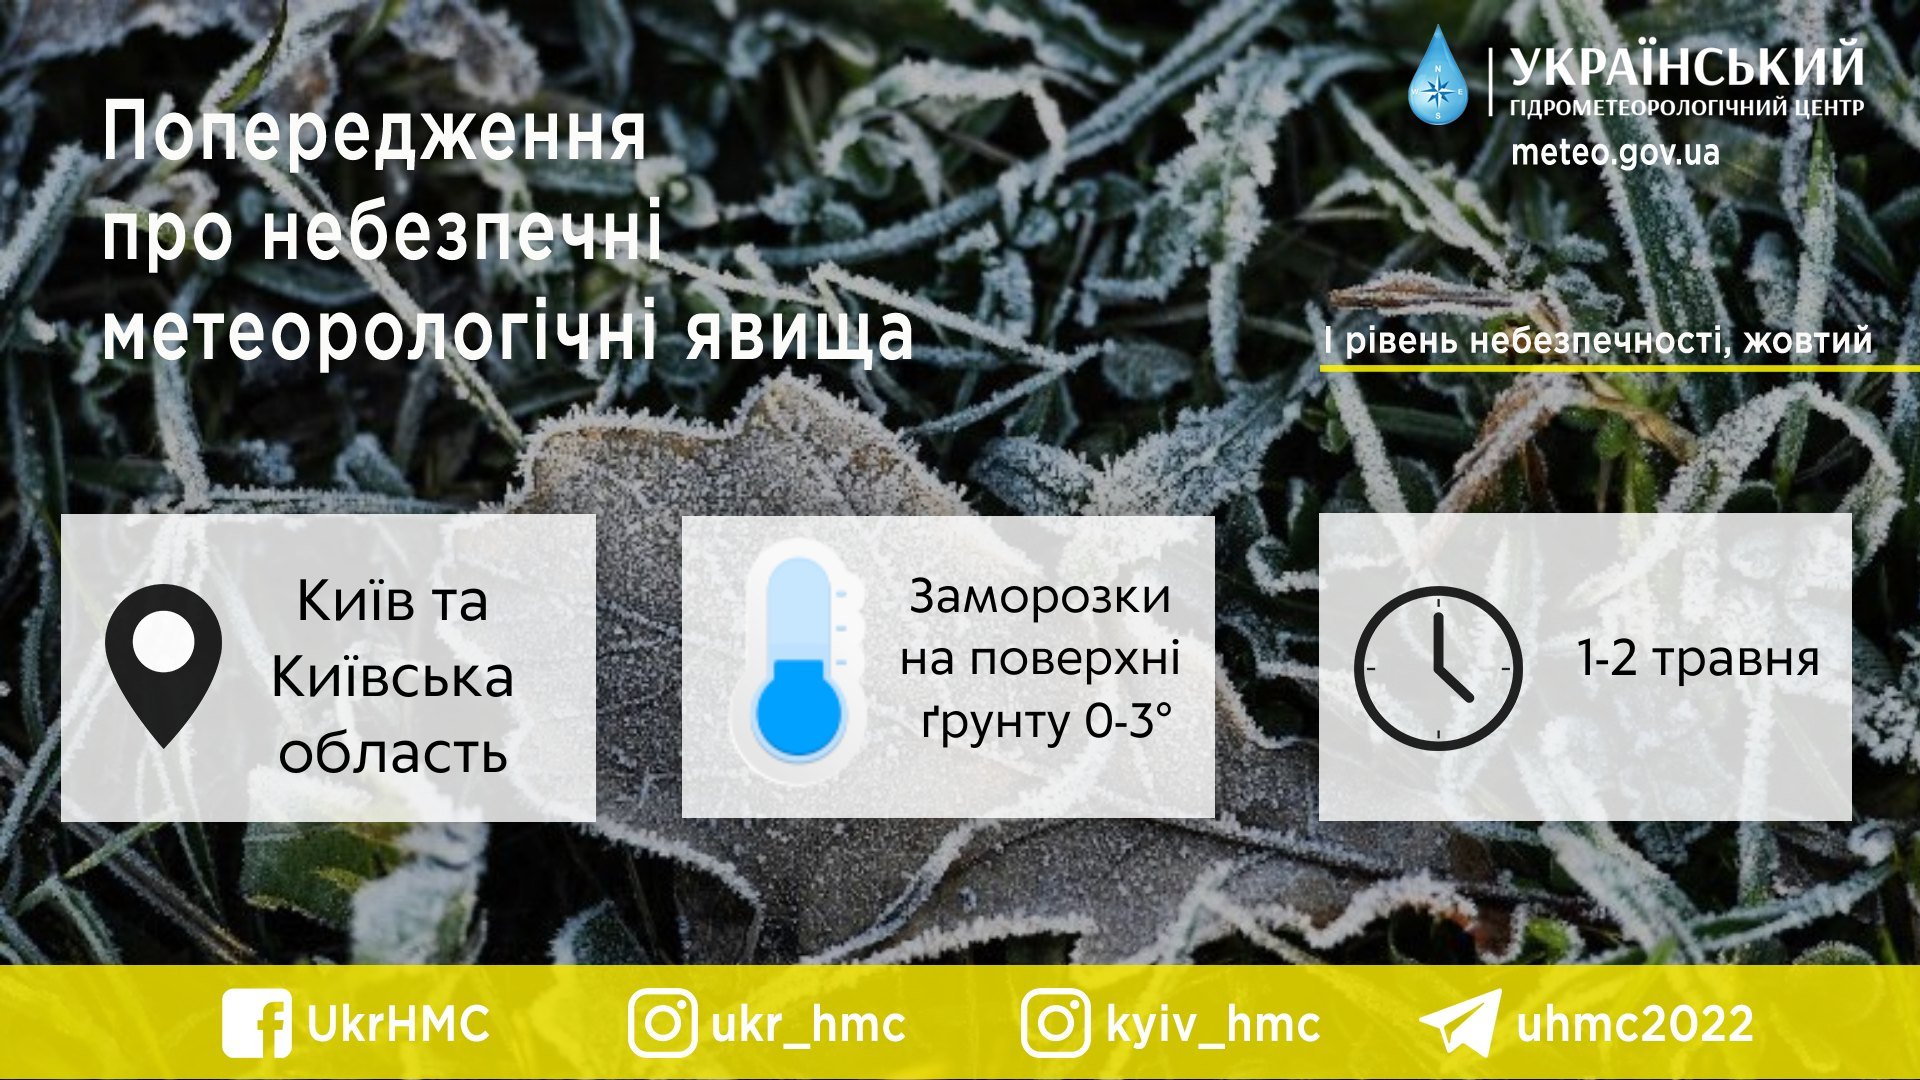 Возвращение зимы в Украину: когда и в каких областях ударят заморозки 